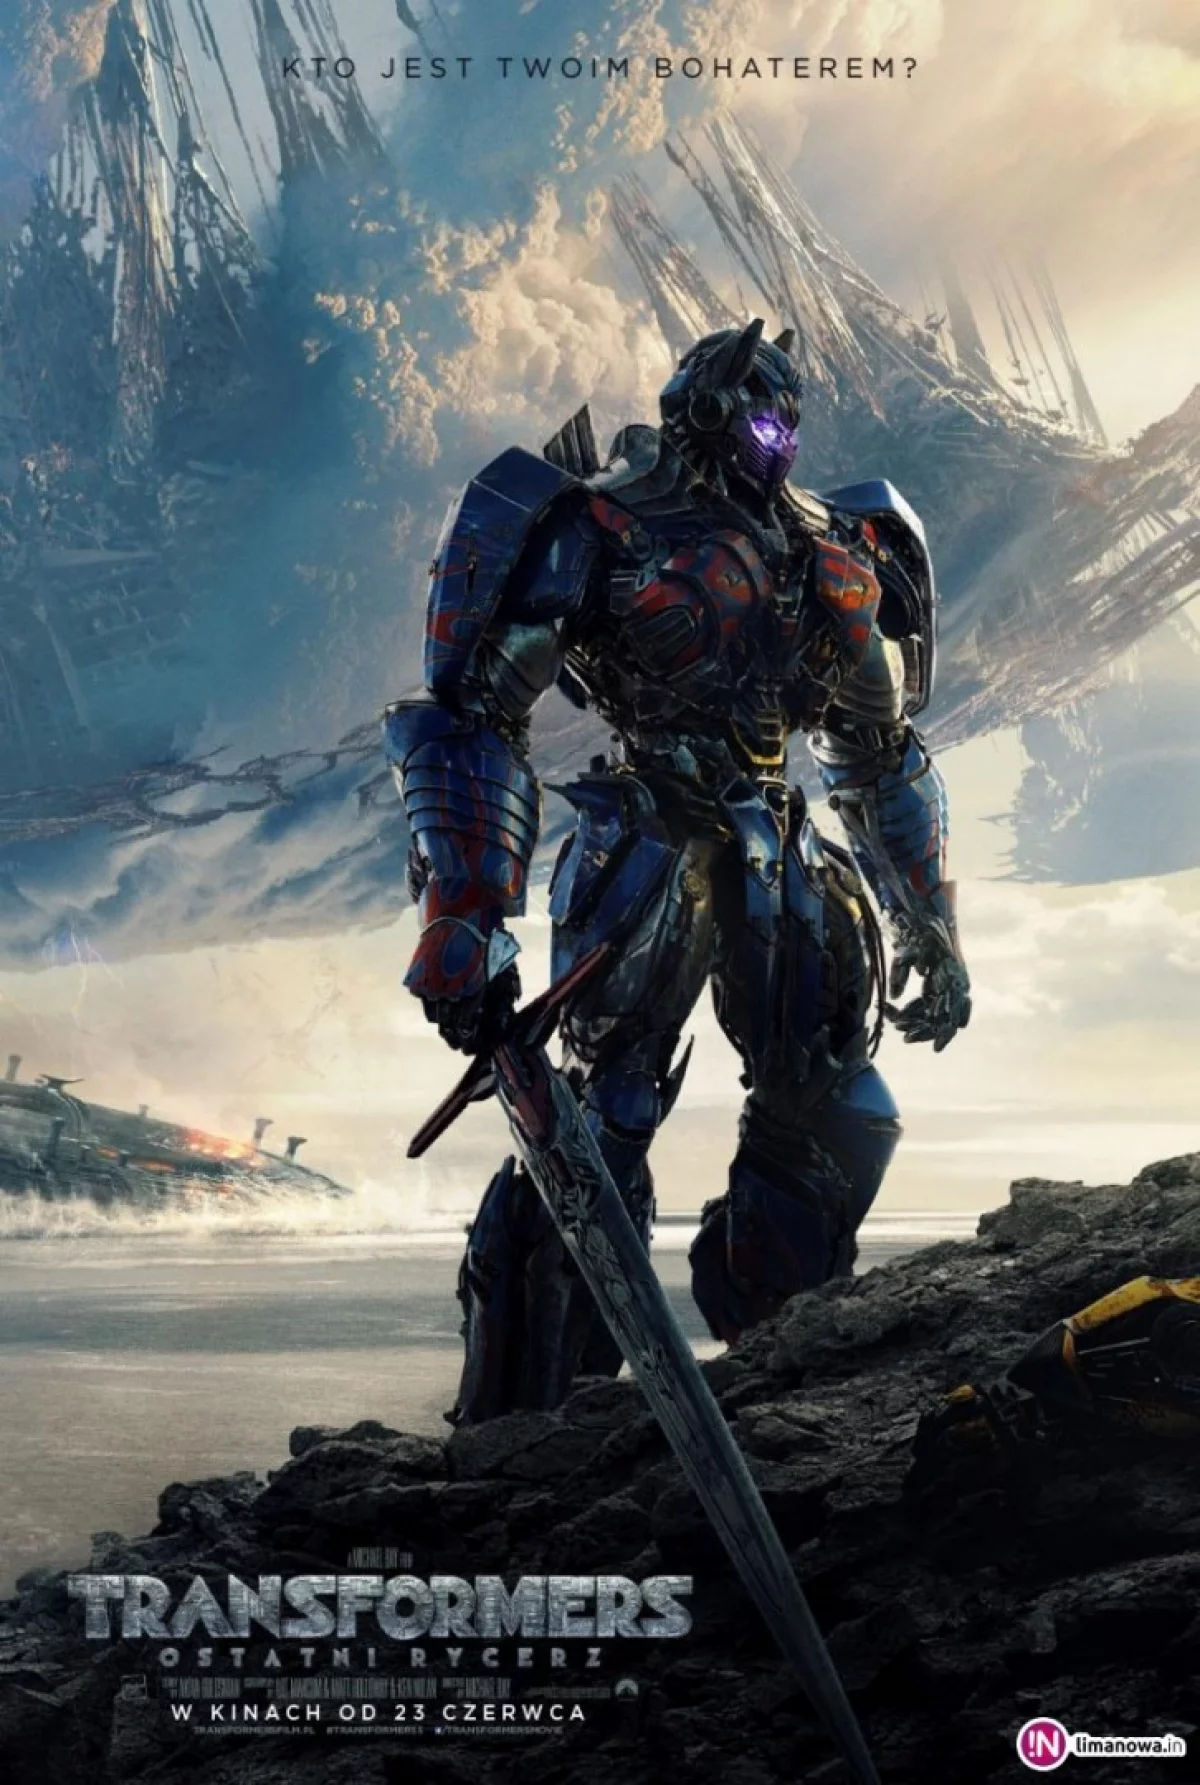 „Transformers: Ostatni rycerz” od 14 lipca w kinie Klaps